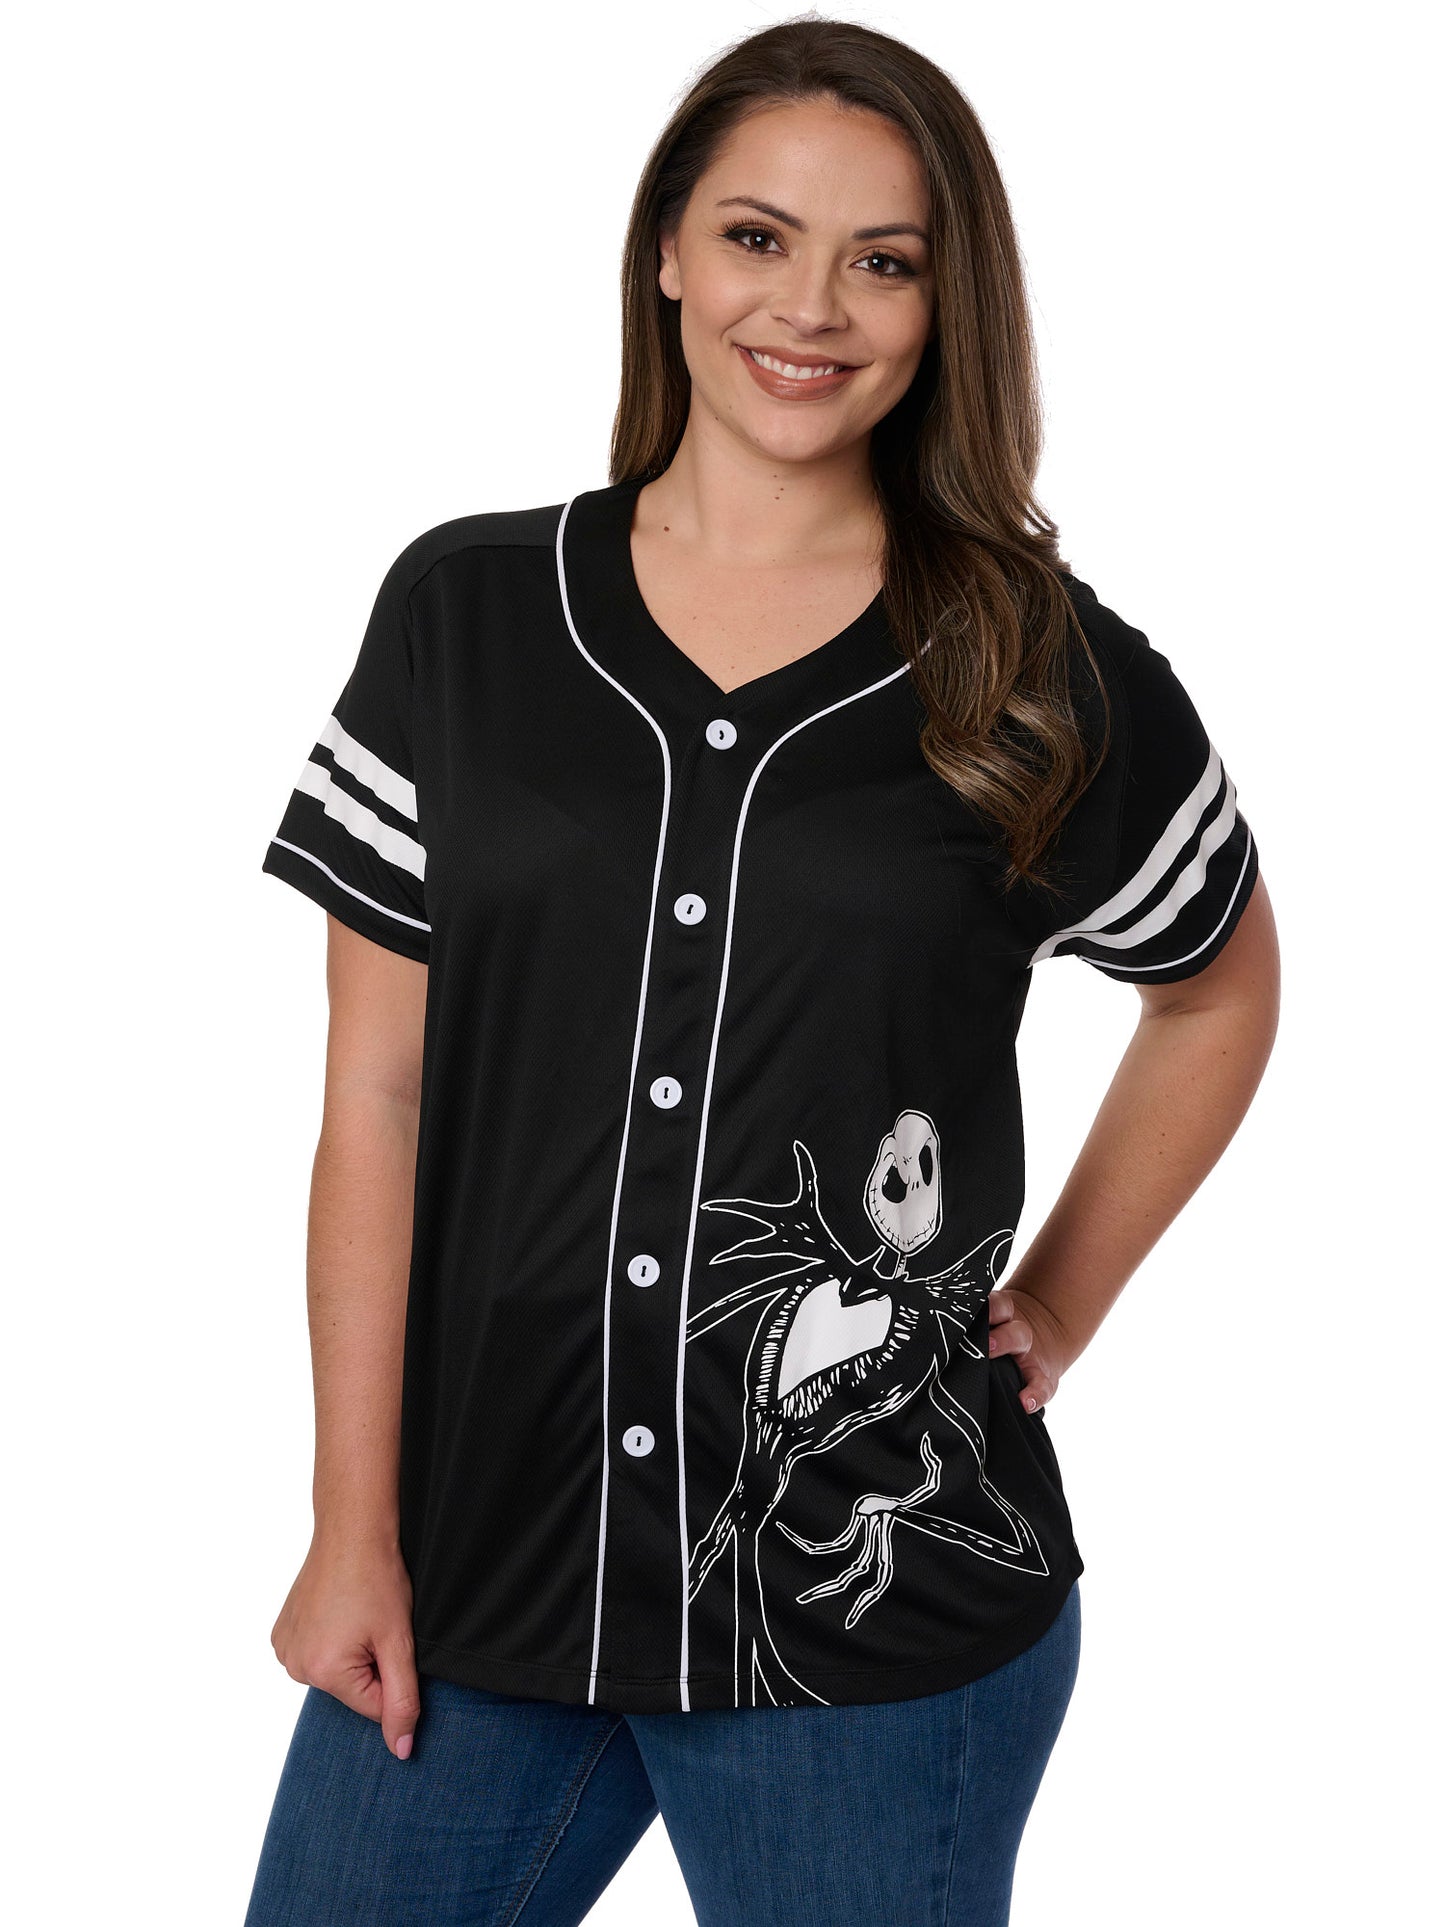 Jack Skellington Black Baseball Jersey Shirt Button Down Women's Plus Size